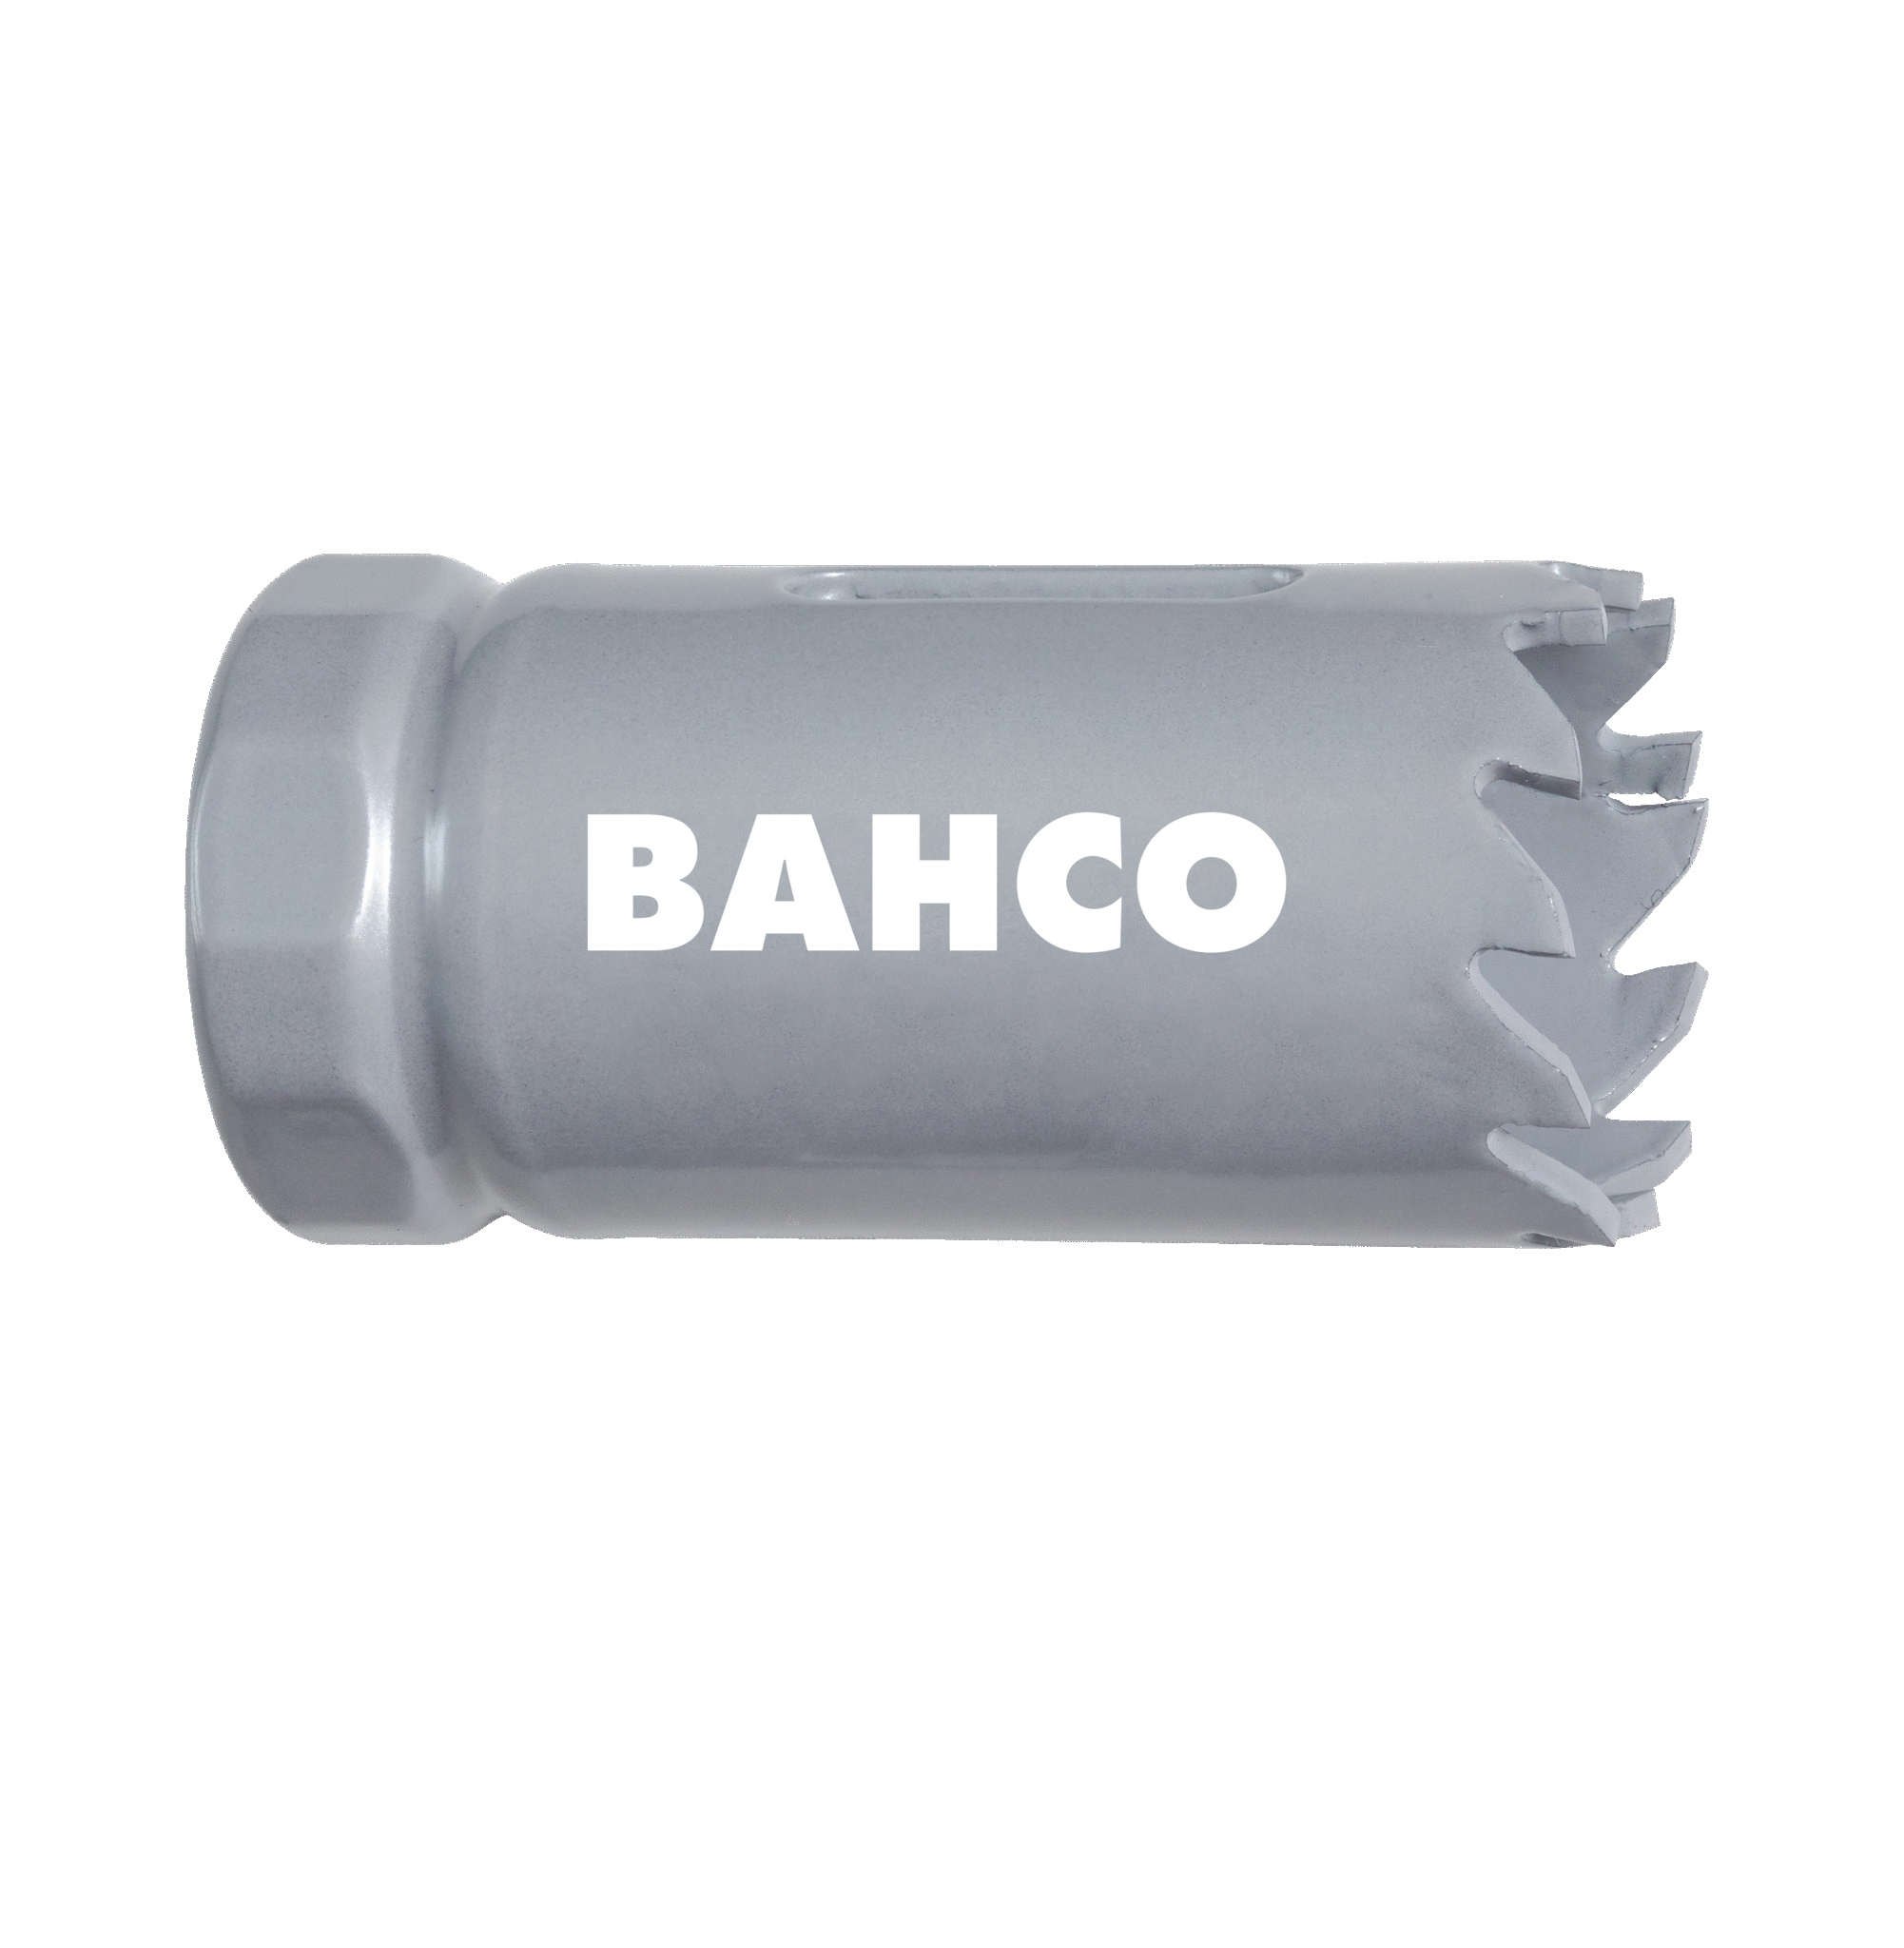 Кольцевые пилы с твердосплавными напайками BAHCO 3832-146